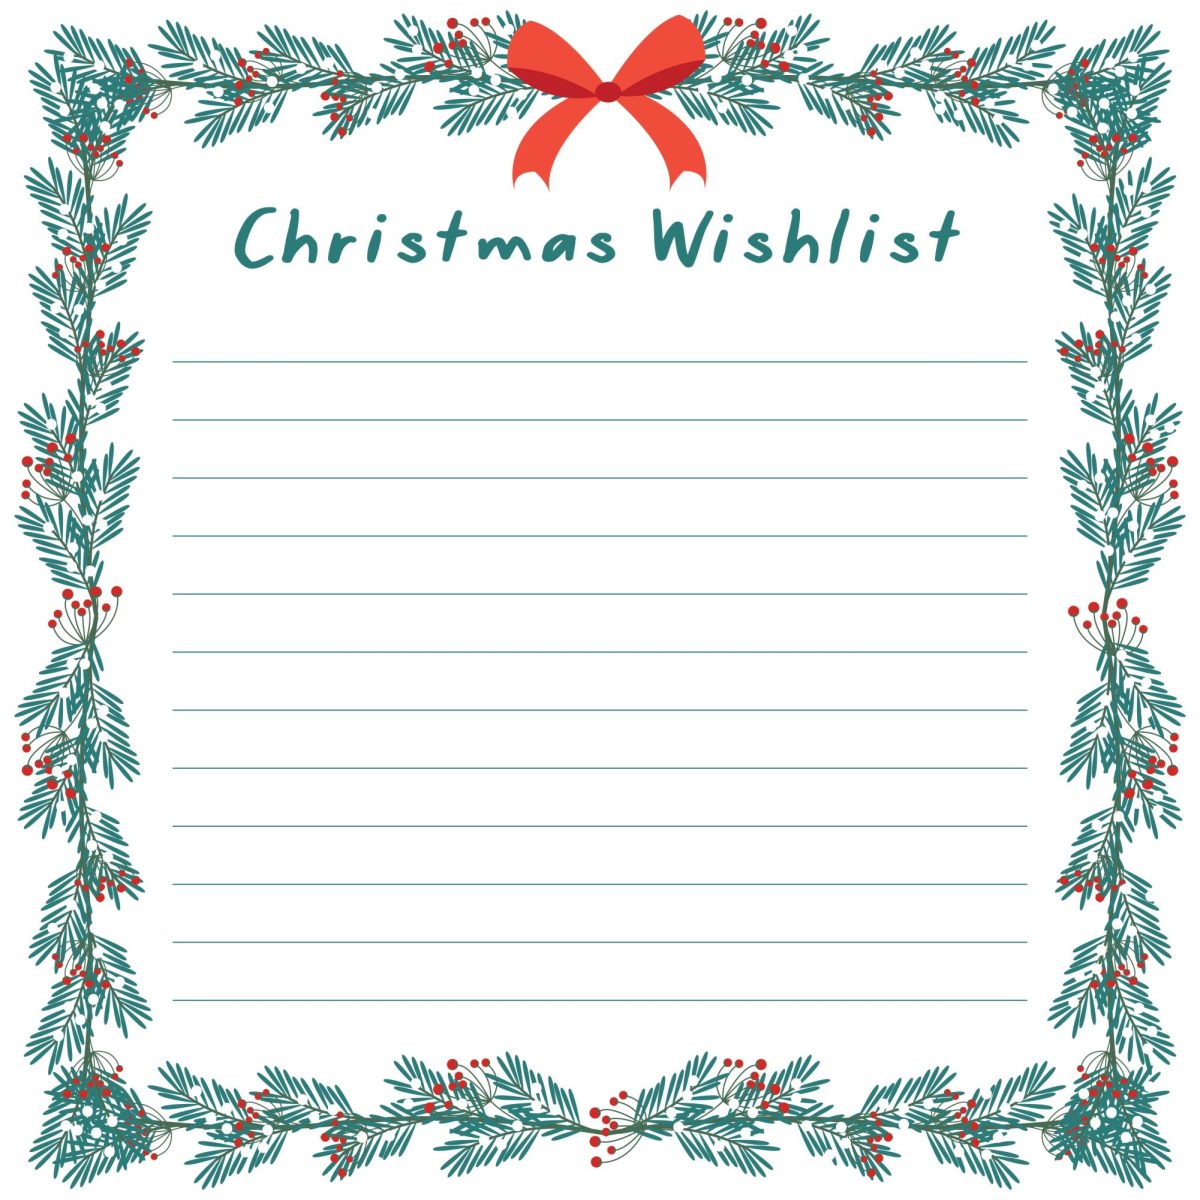 Winter holiday wish list ideas